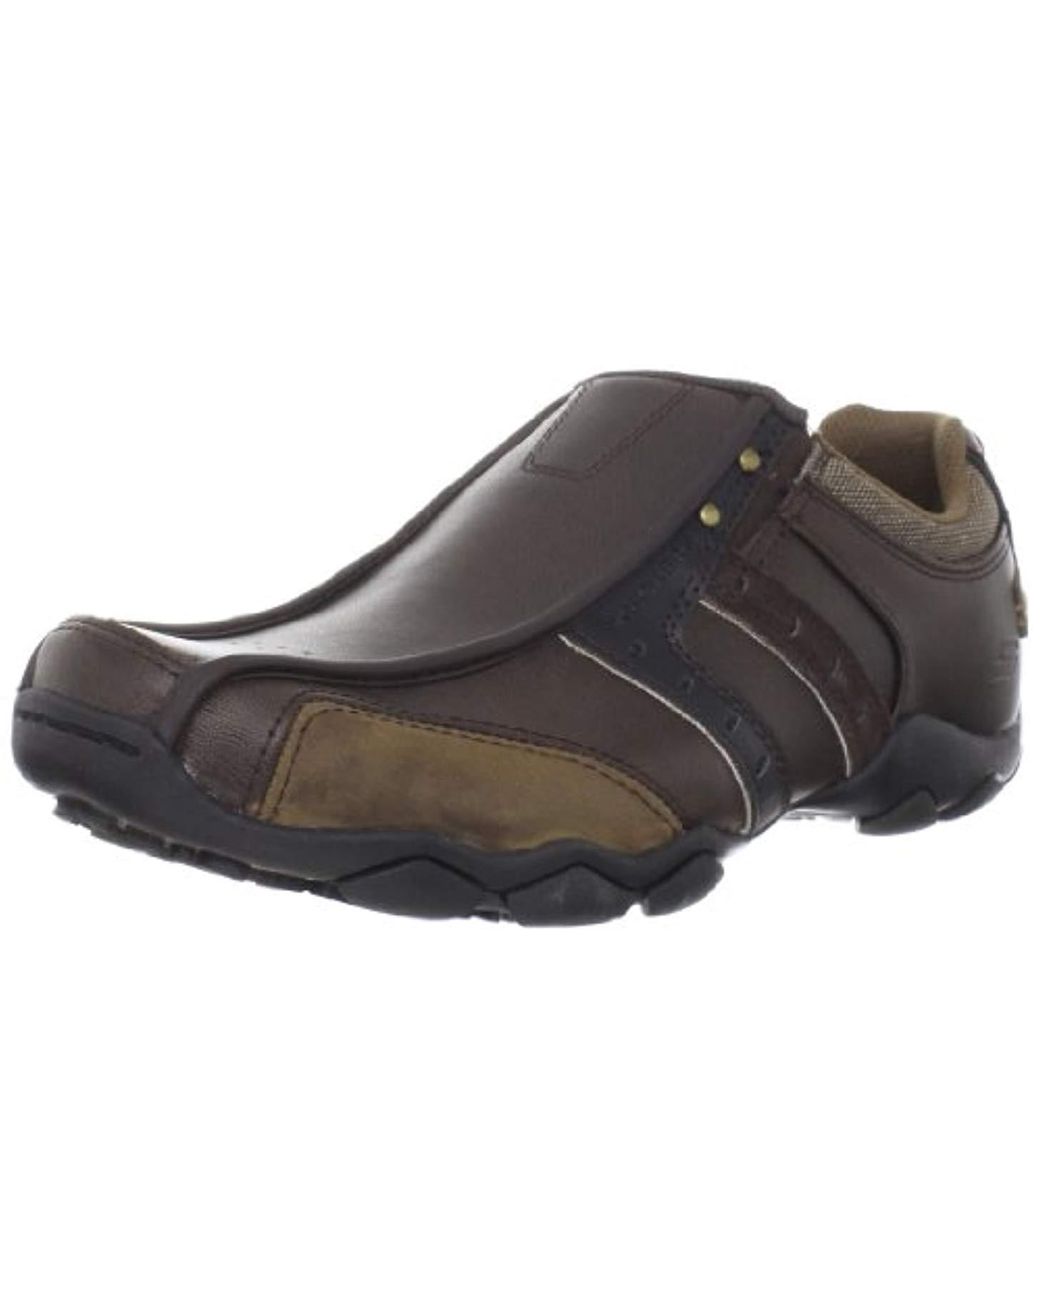 Skechers Diameter - Heisman Shoes Brown for Men Lyst UK